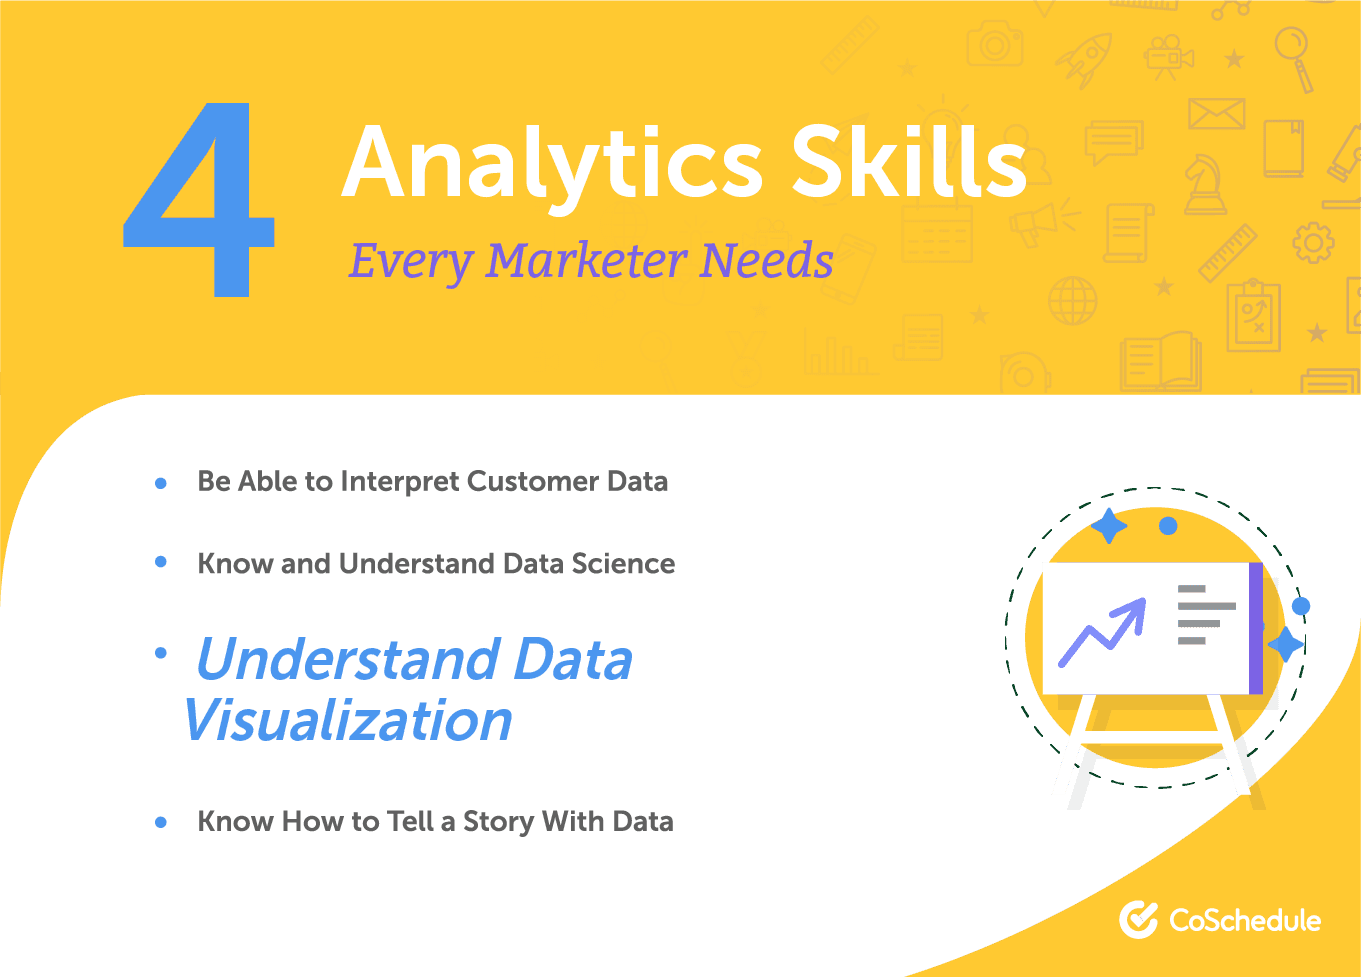 List of 4 analytics skills every marketer needs.